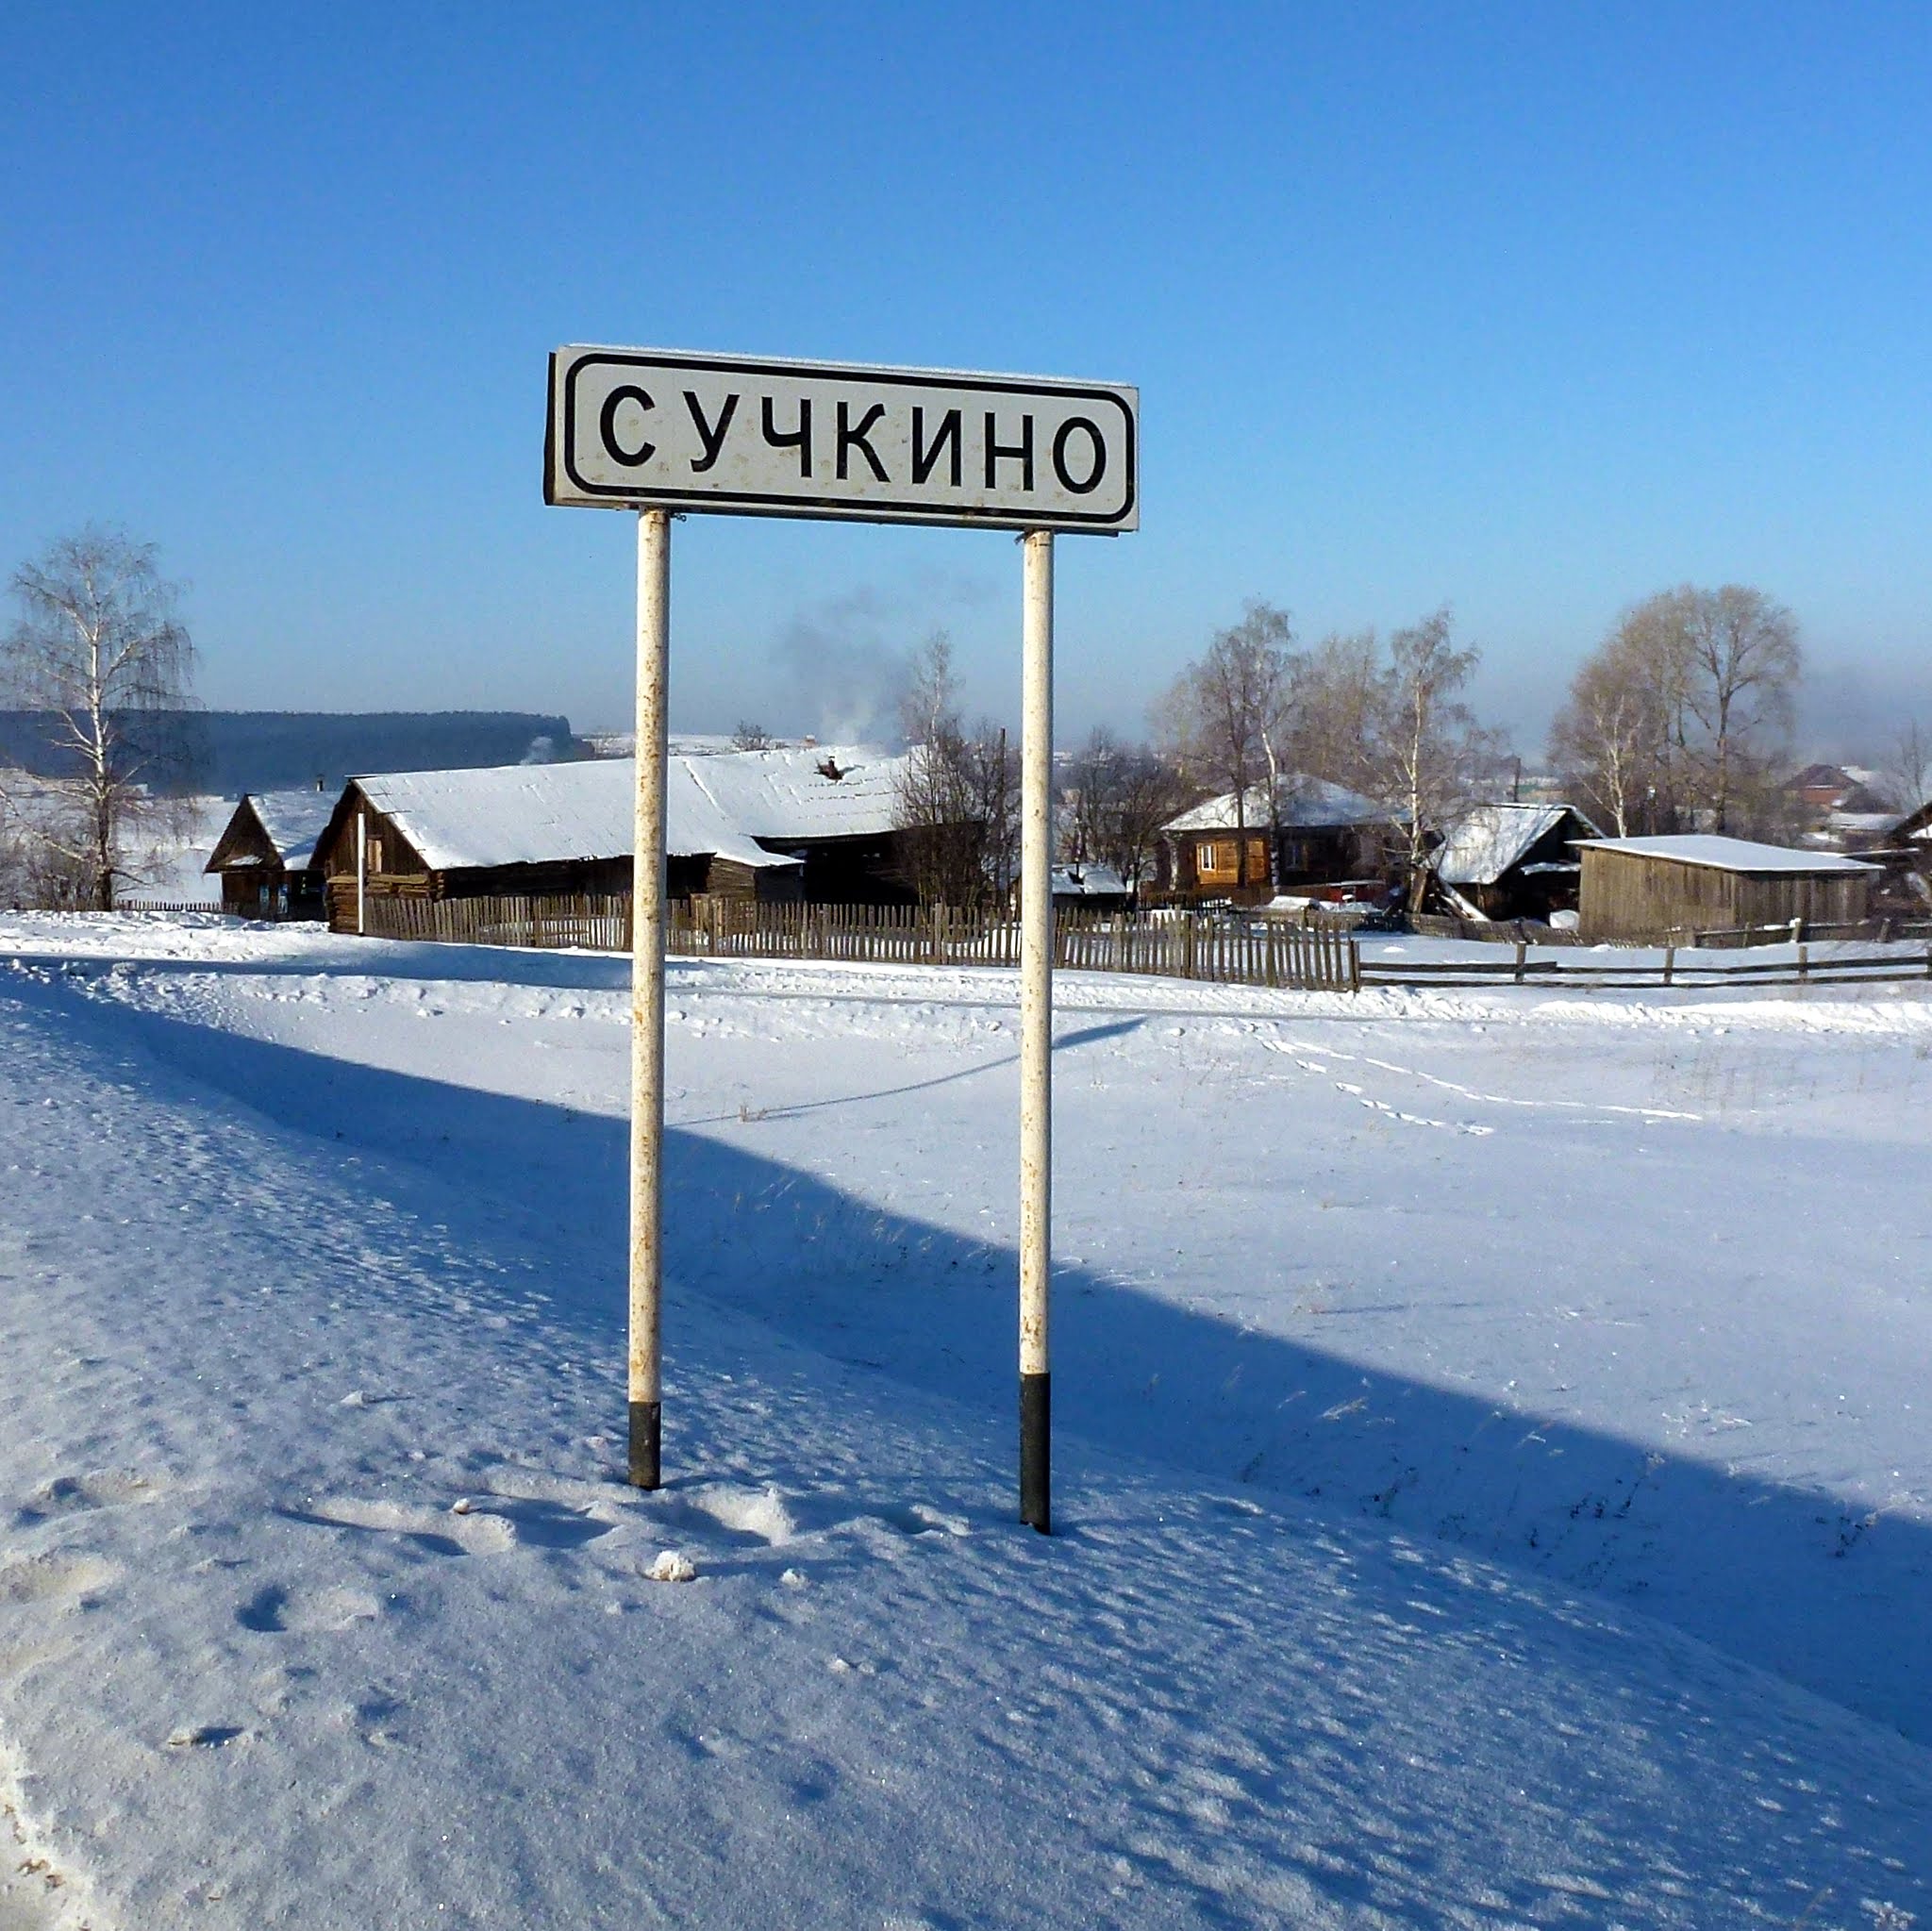 Назови 1 деревню. Деревня сучкино Пермский край. Вывеска деревни. Название деревень. Смешные названия деревень.